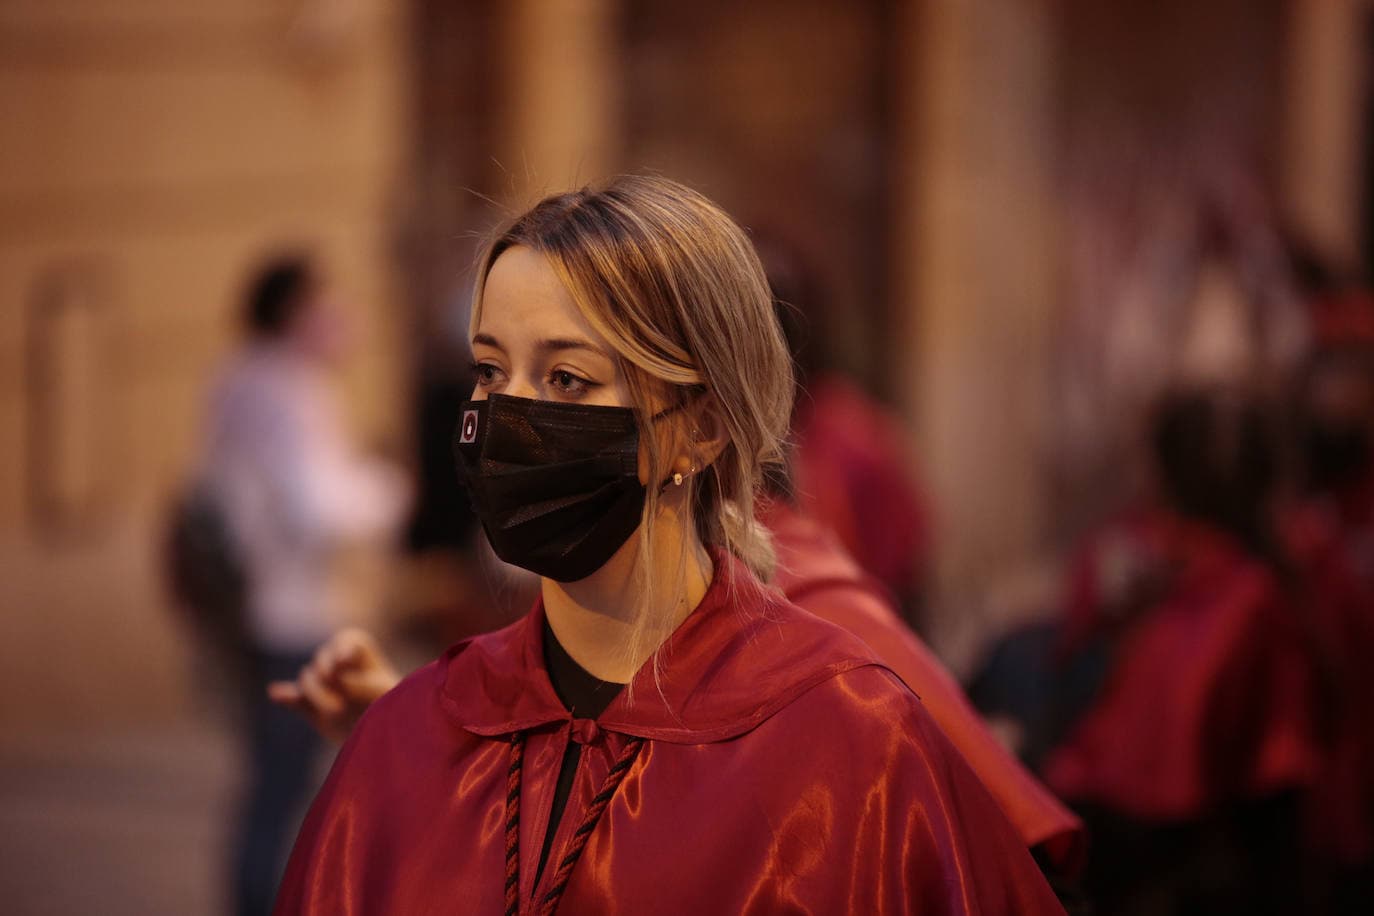 La Hermandad del Silencio y la procesión más larga de Salamanca